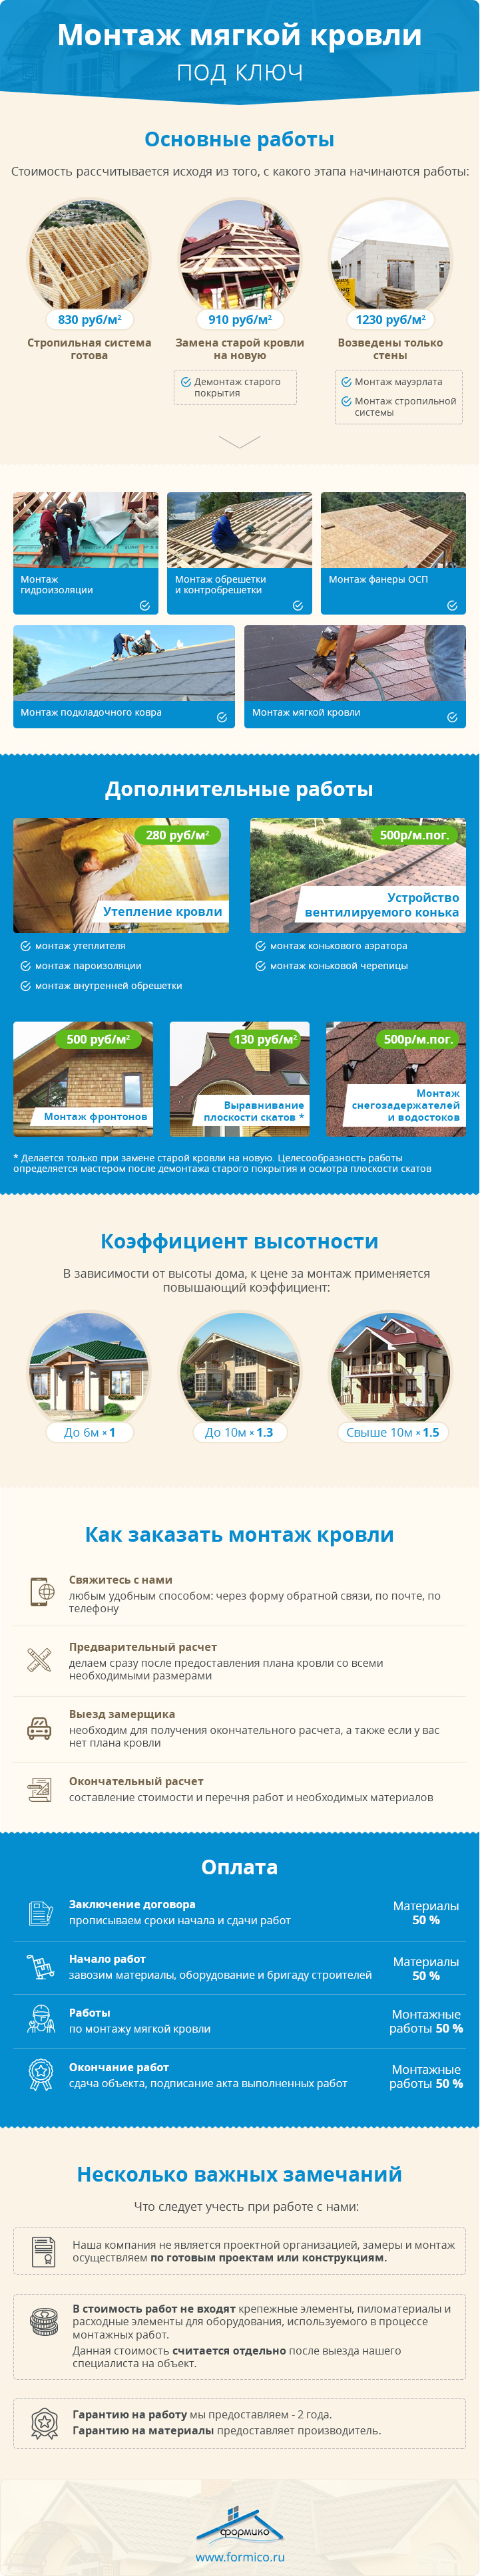 Прайс-лист цен на кровельные работы в Санкт-Петербурге - - цена ремонта крыши за м2 в СПб